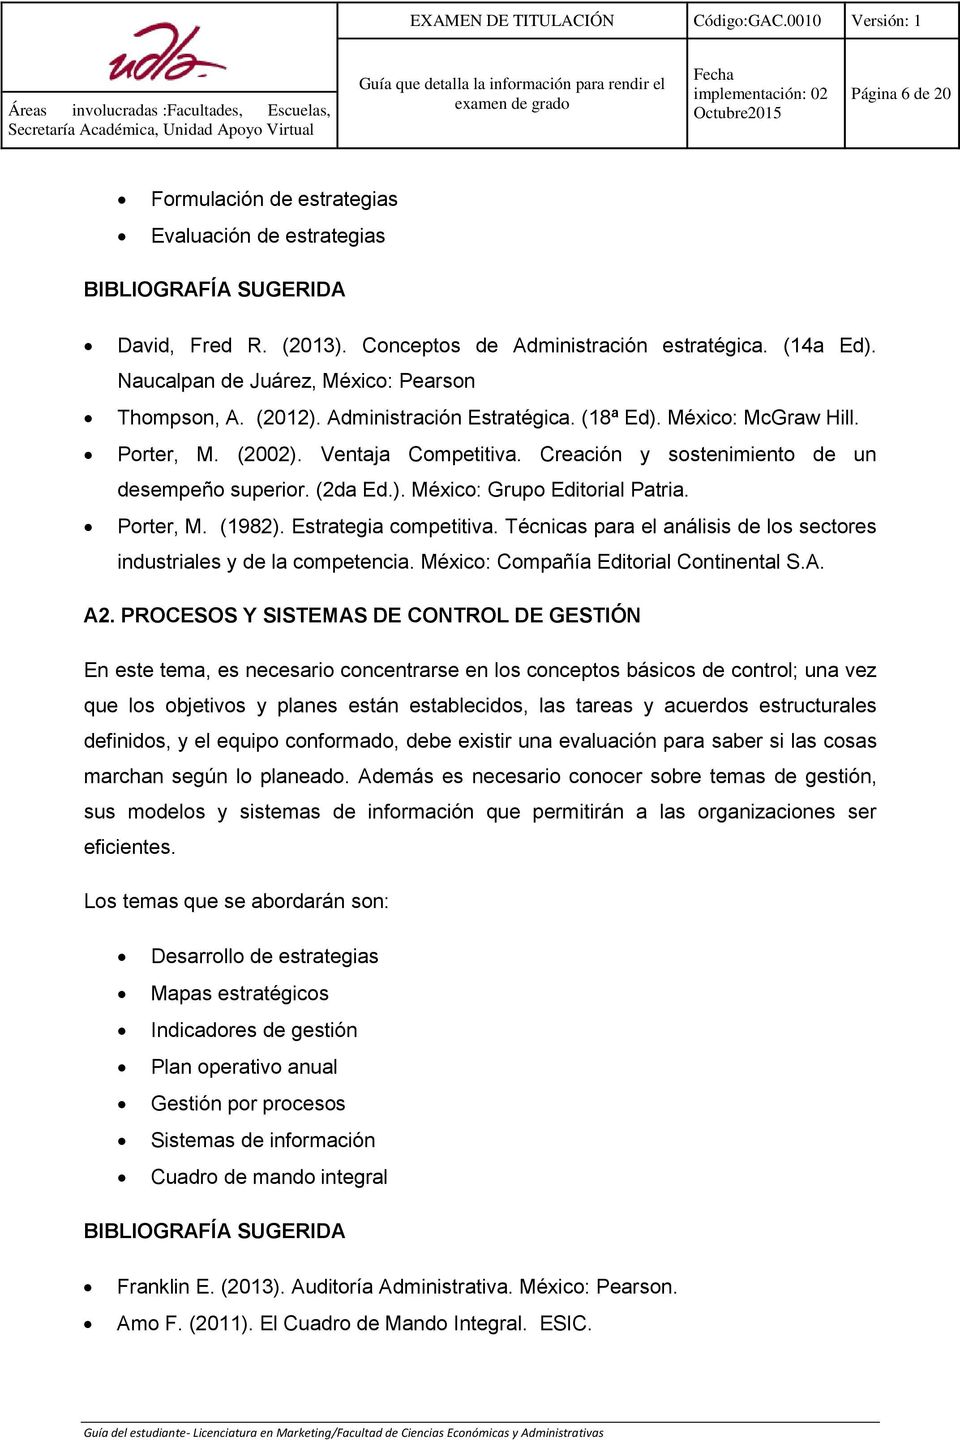 Porter, M. (1982). Estrategia competitiva. Técnicas para el análisis de los sectores industriales y de la competencia. México: Compañía Editorial Continental S.A. A2.